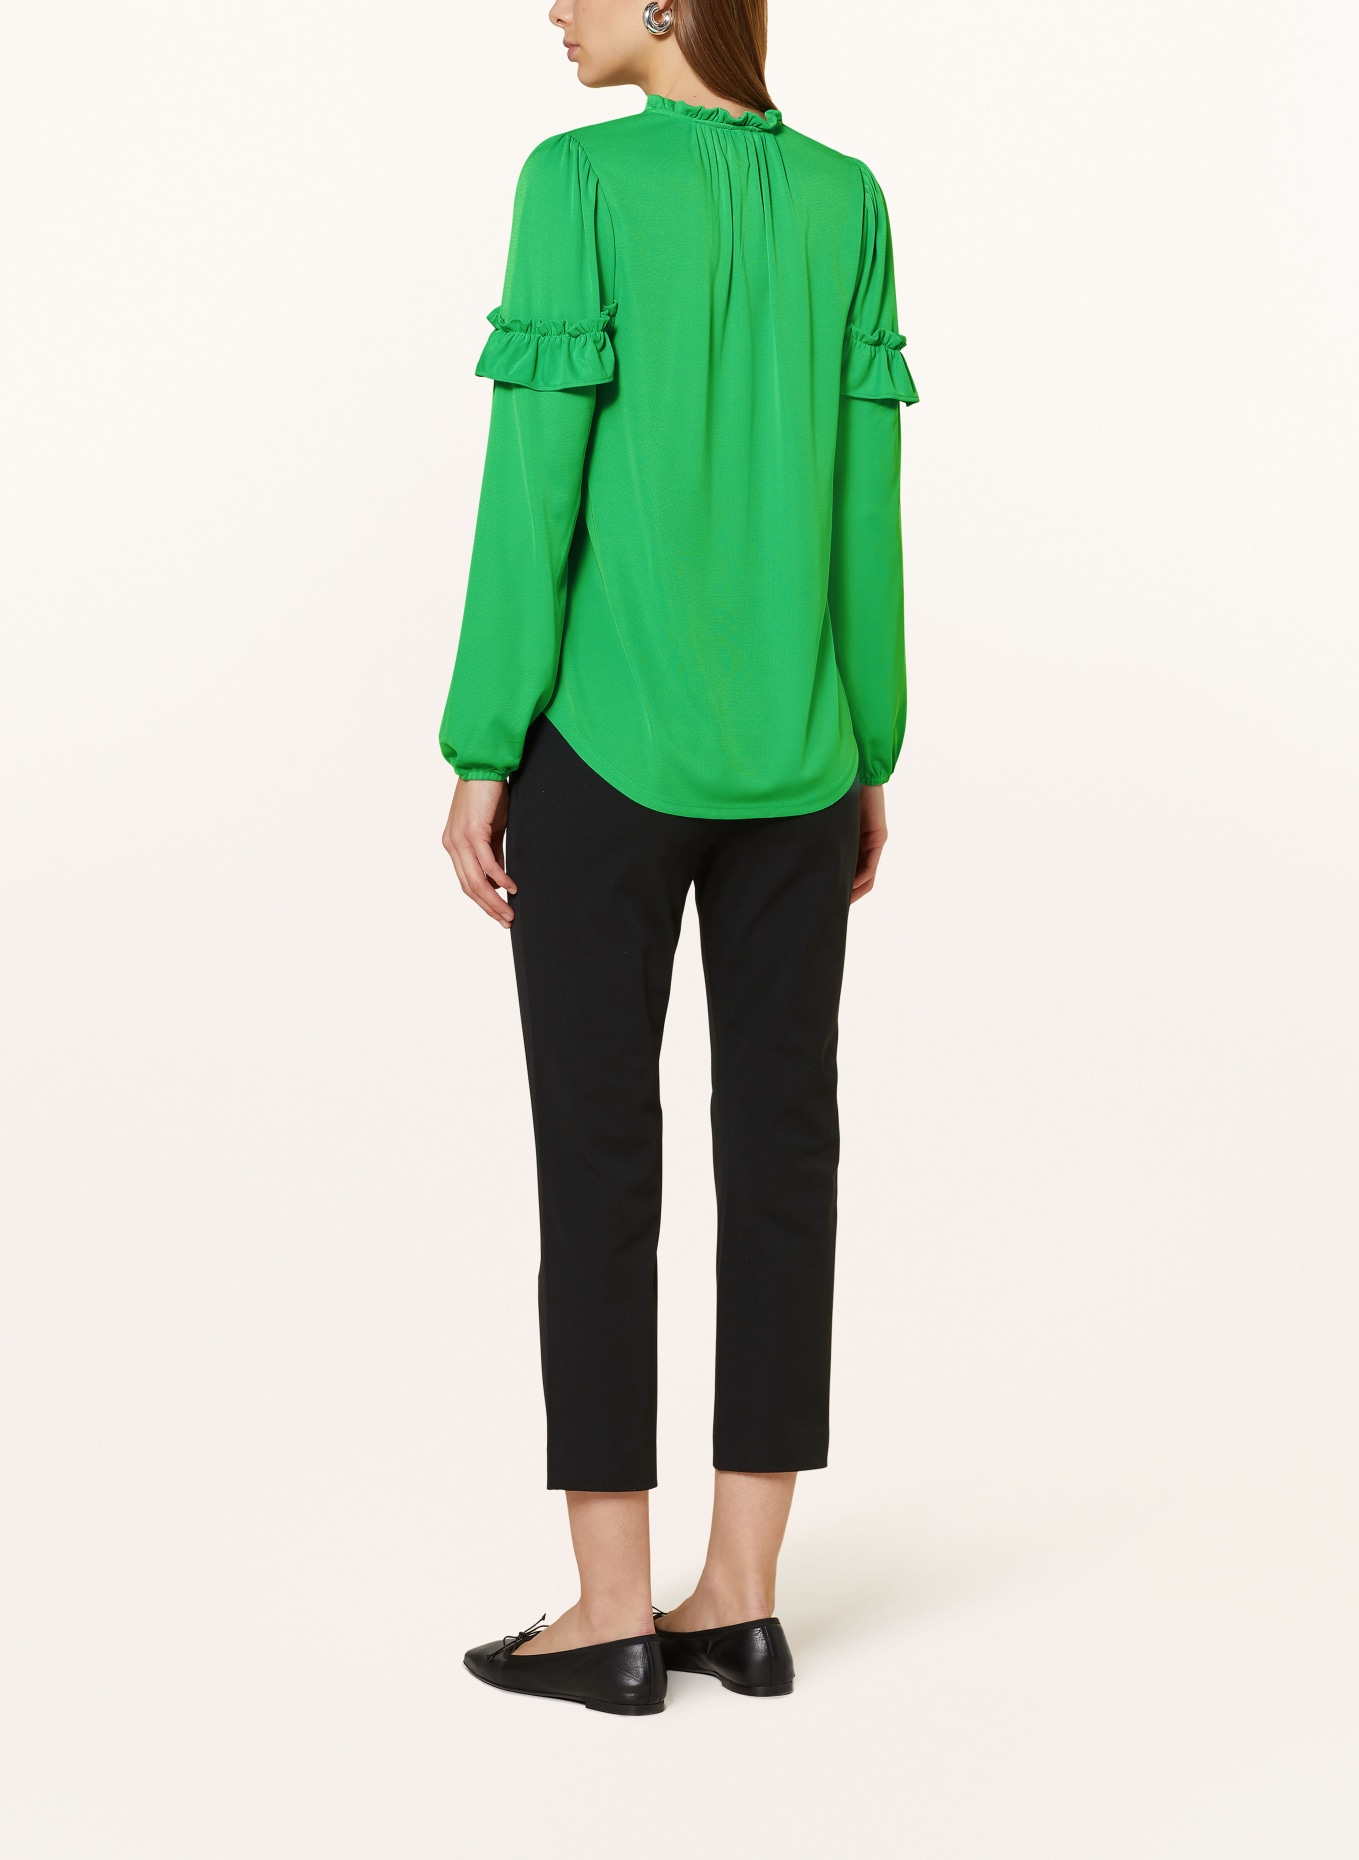 LAUREN RALPH LAUREN Shirt blouse in jersey with ruffles, Color: NEON GREEN (Image 3)